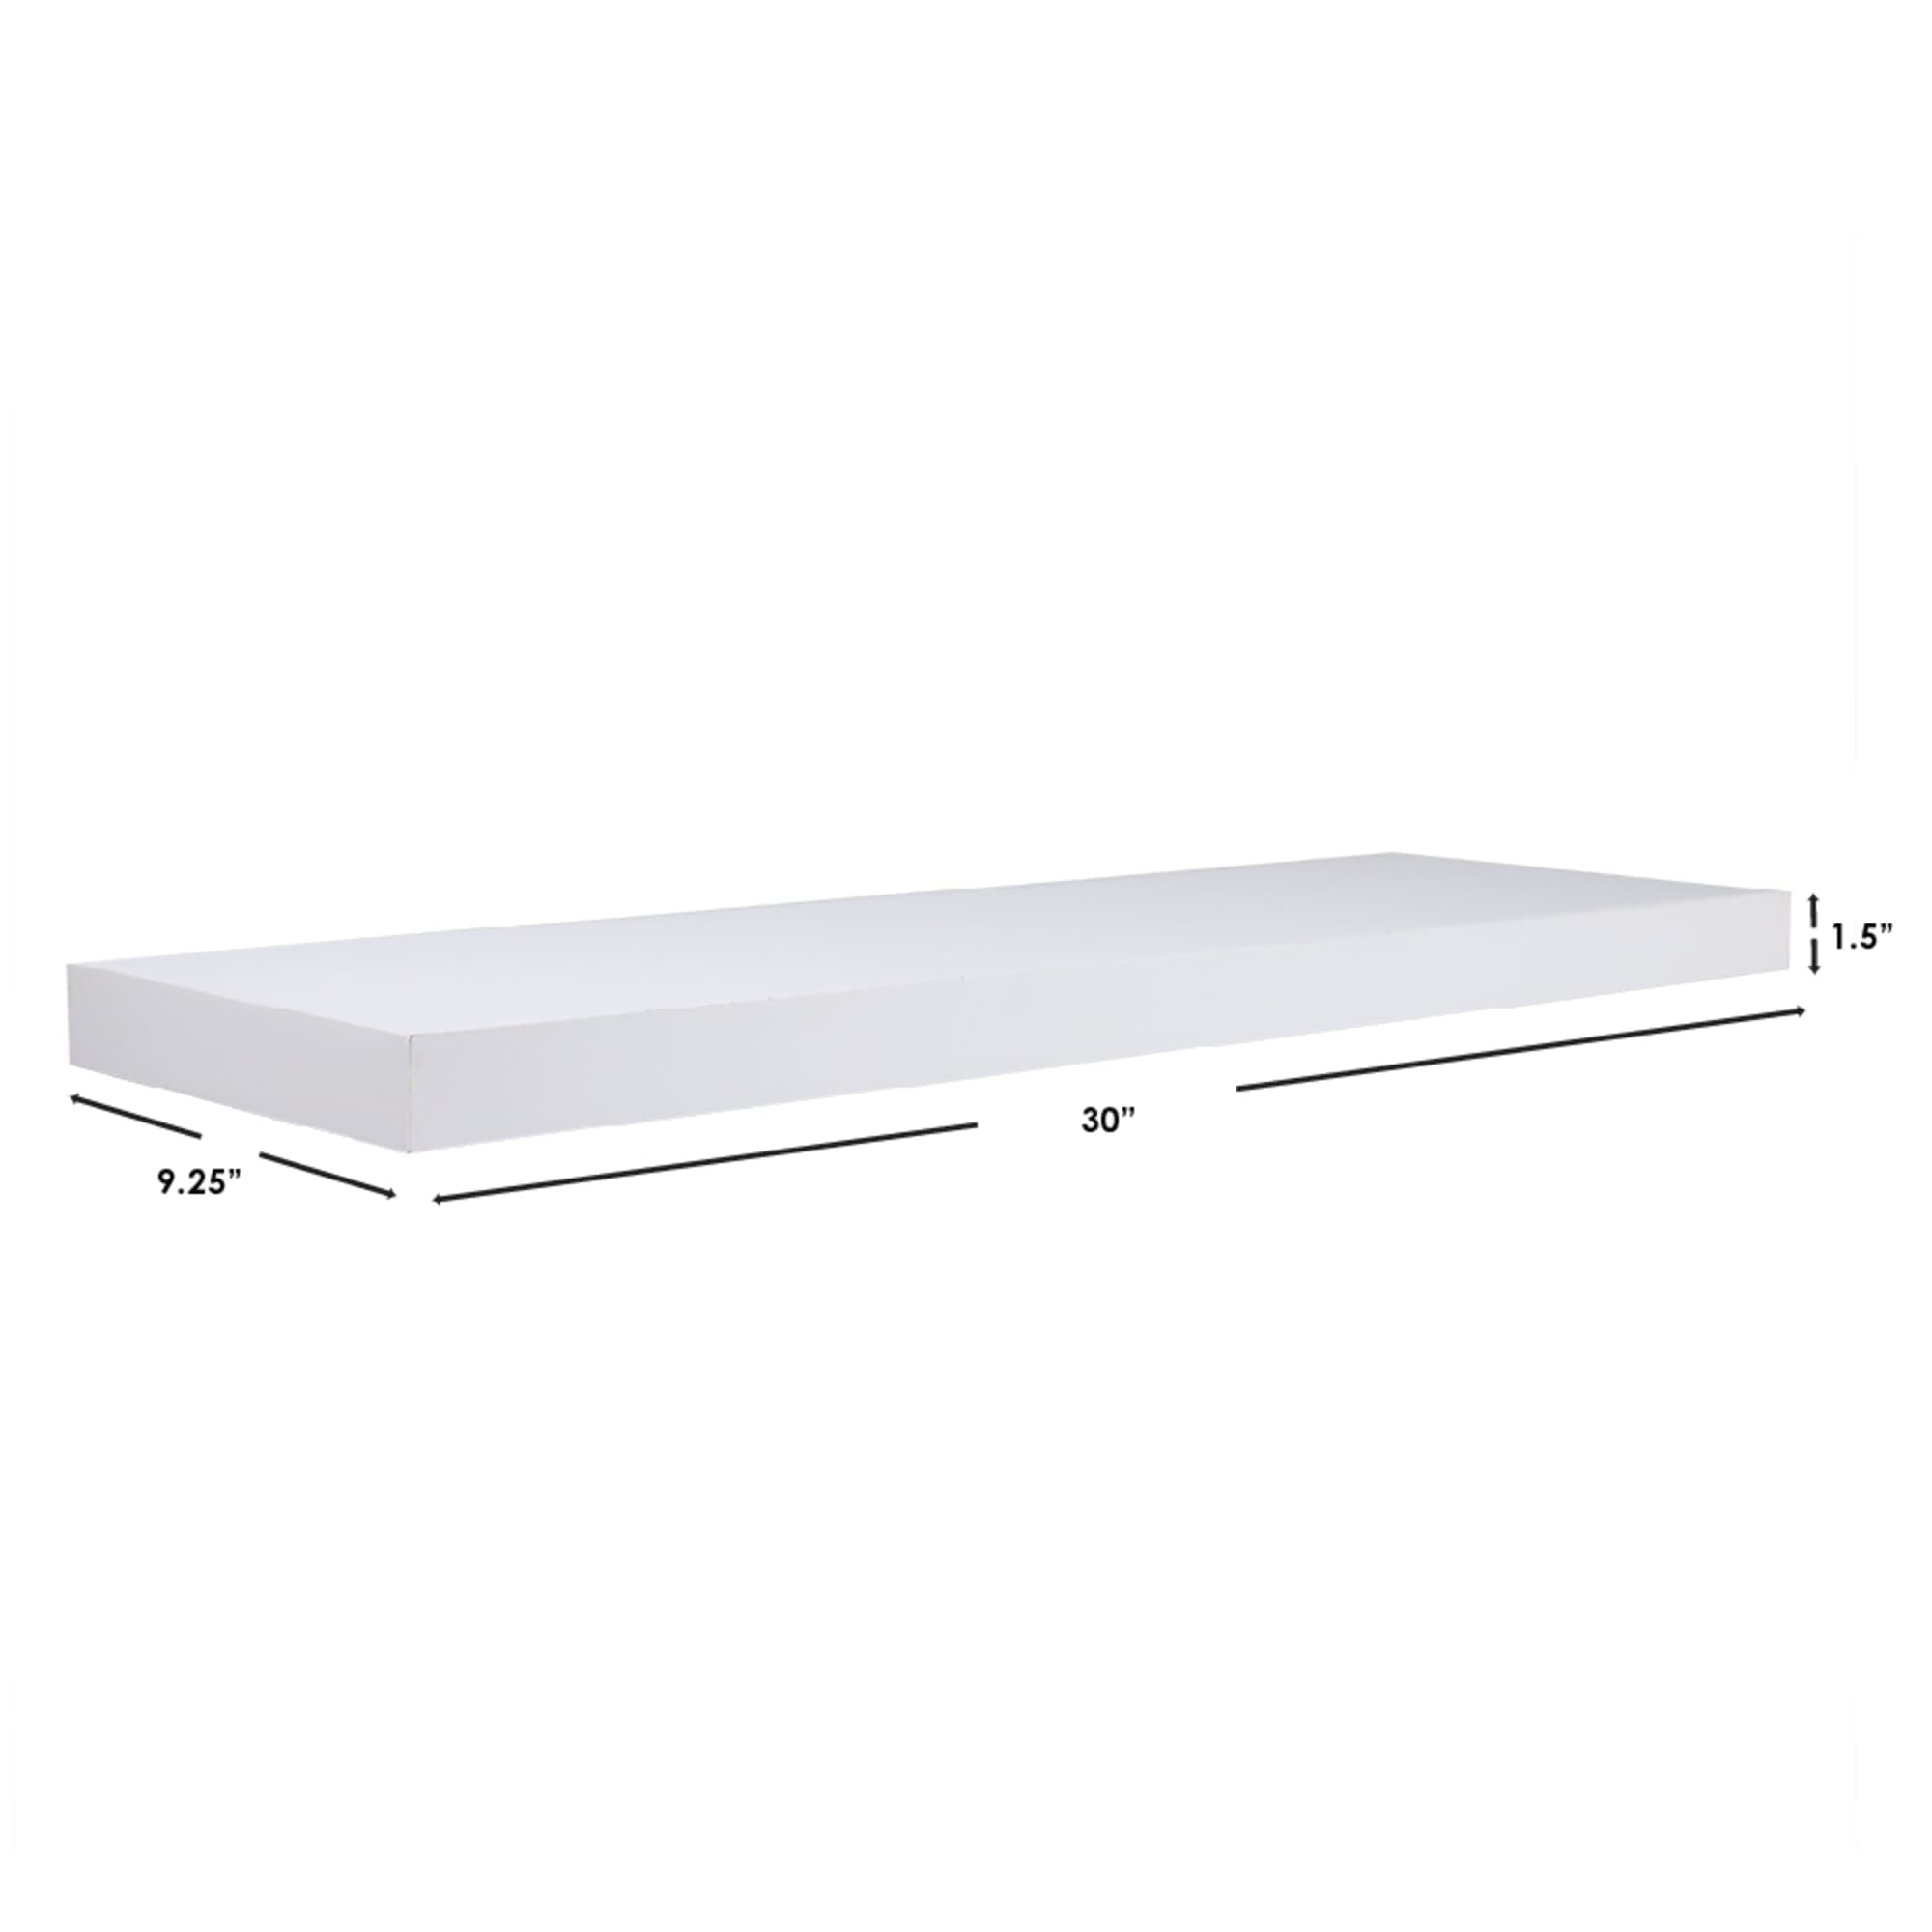 Home Basics 30" MDF Floating Shelf, White $12.00 EACH, CASE PACK OF 6